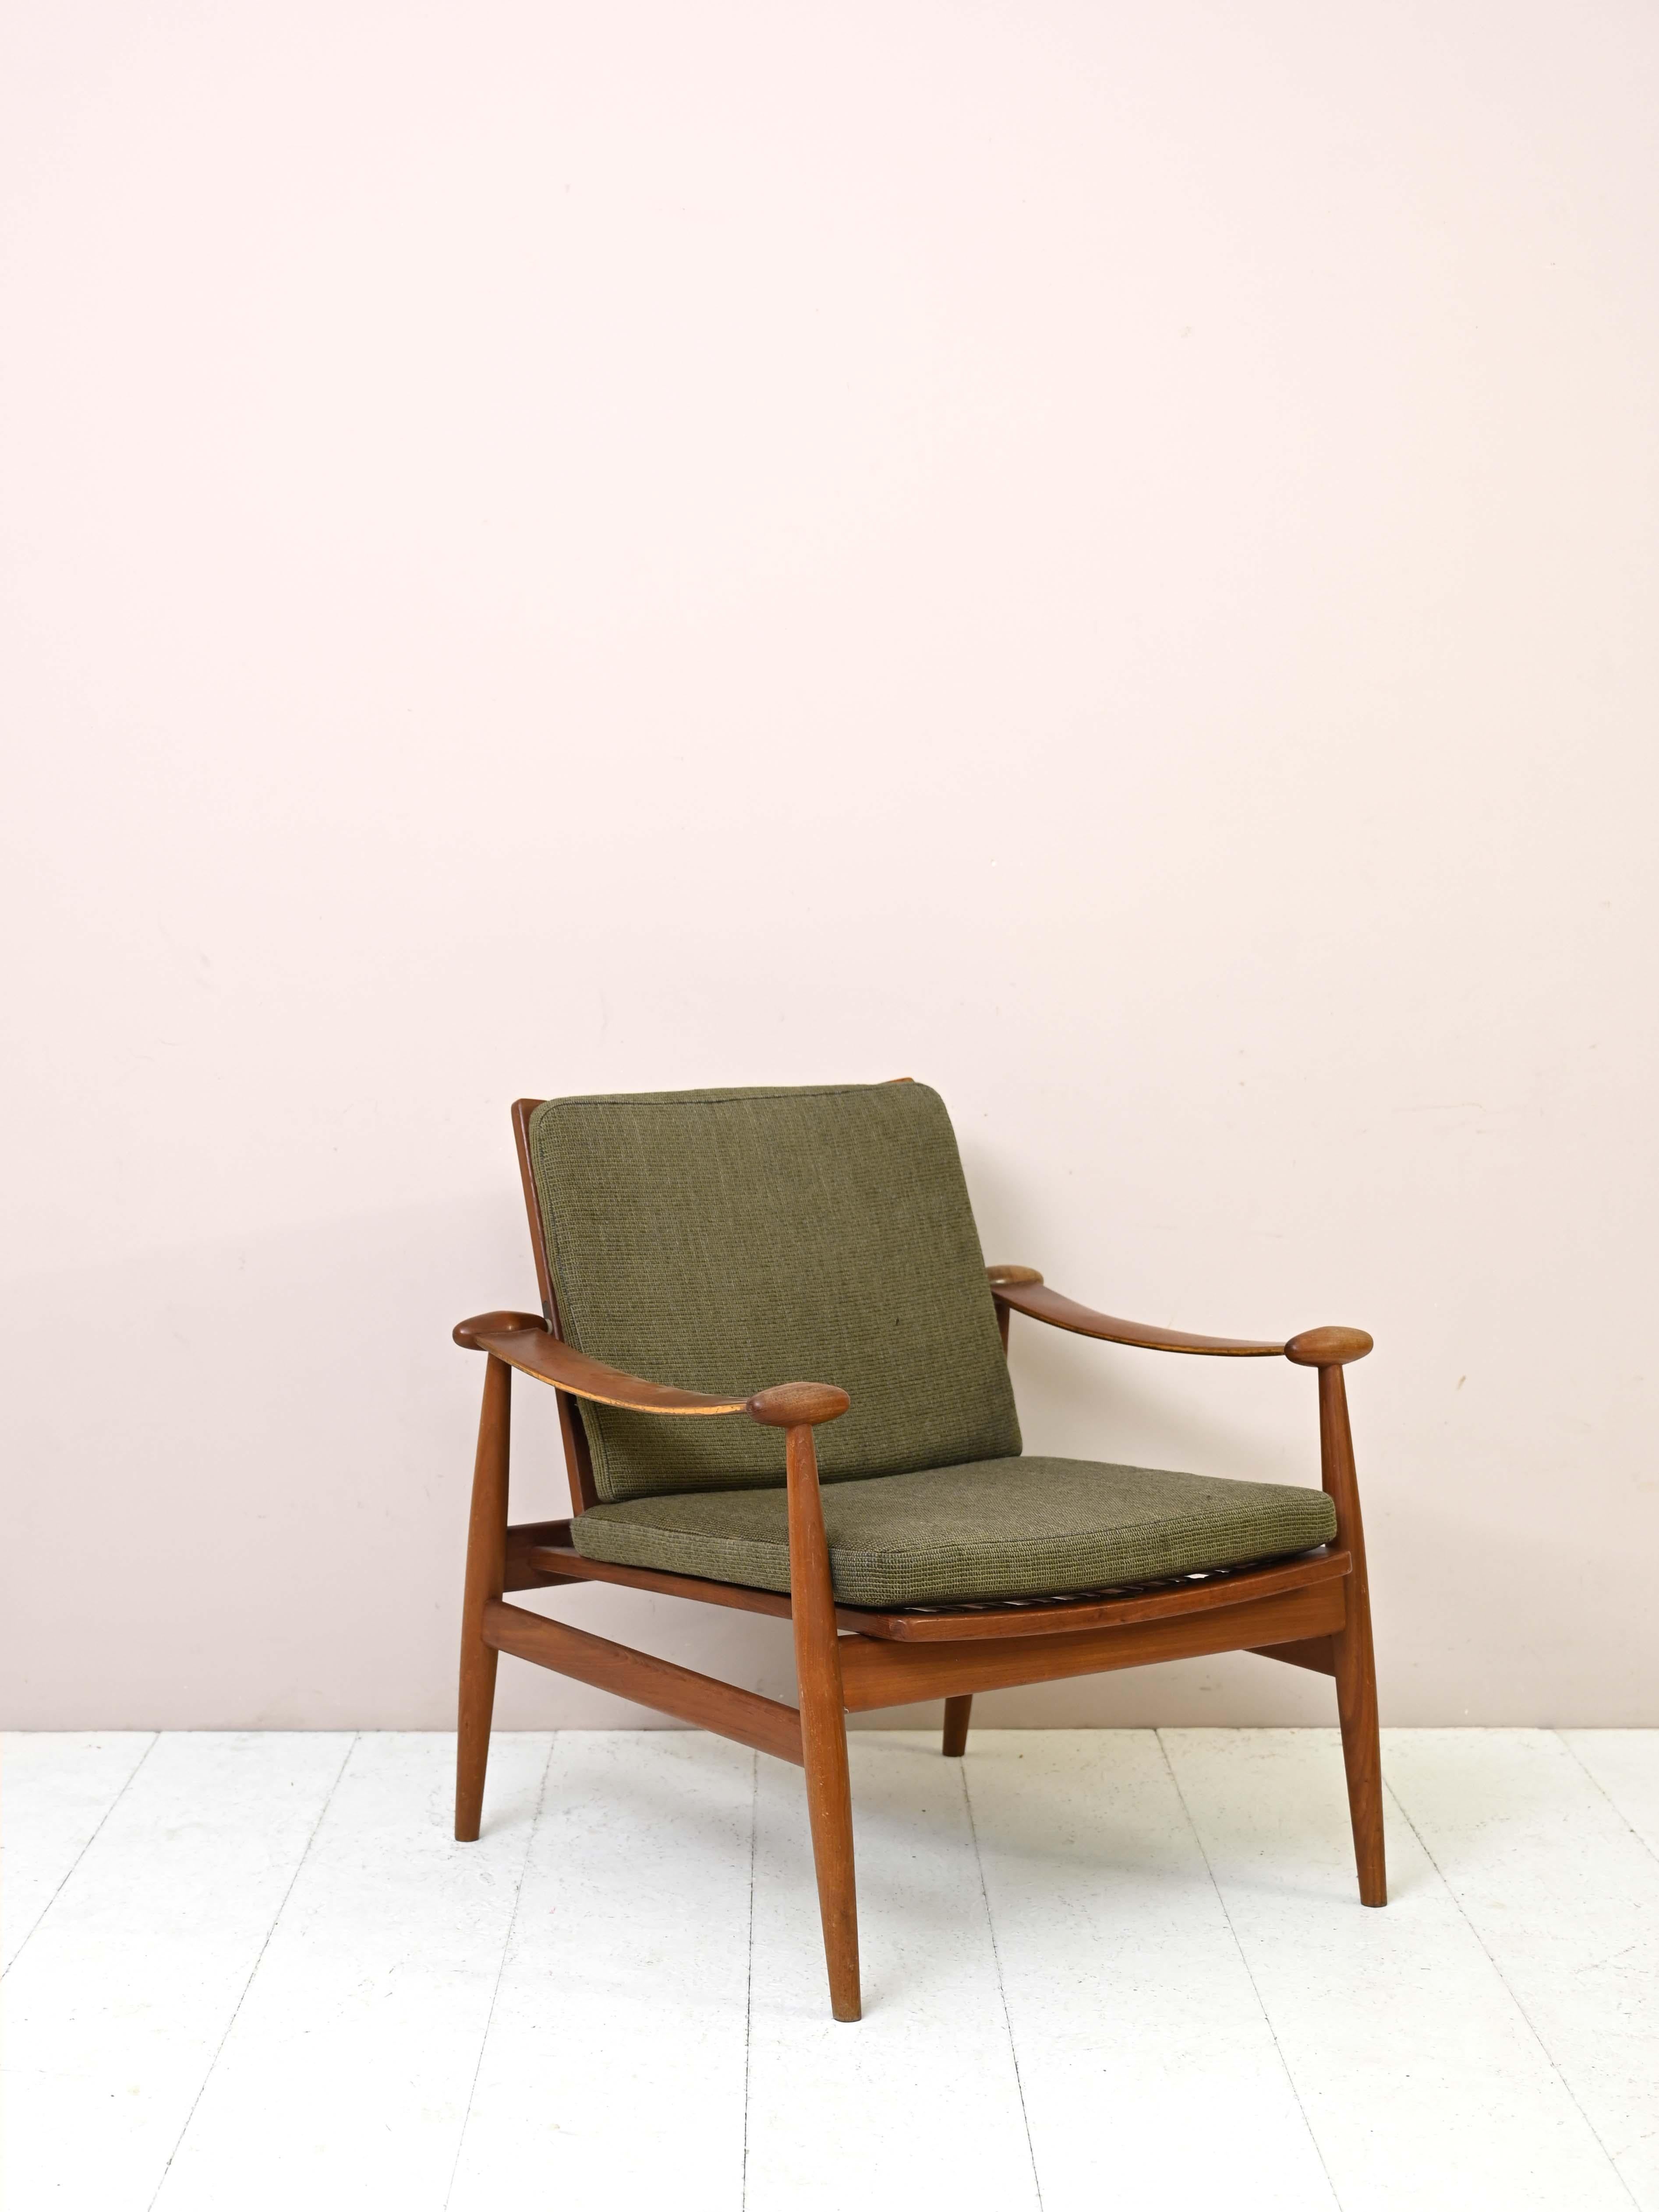 Sessel Modell FD 133 original vintage.

Dieser einzigartig gestaltete und elegante Sessel wurde in den 1960er Jahren von Finn Juhl entworfen.
Das Gestell ist aus massivem Teakholz und die gepolsterten Kissen haben den originalen